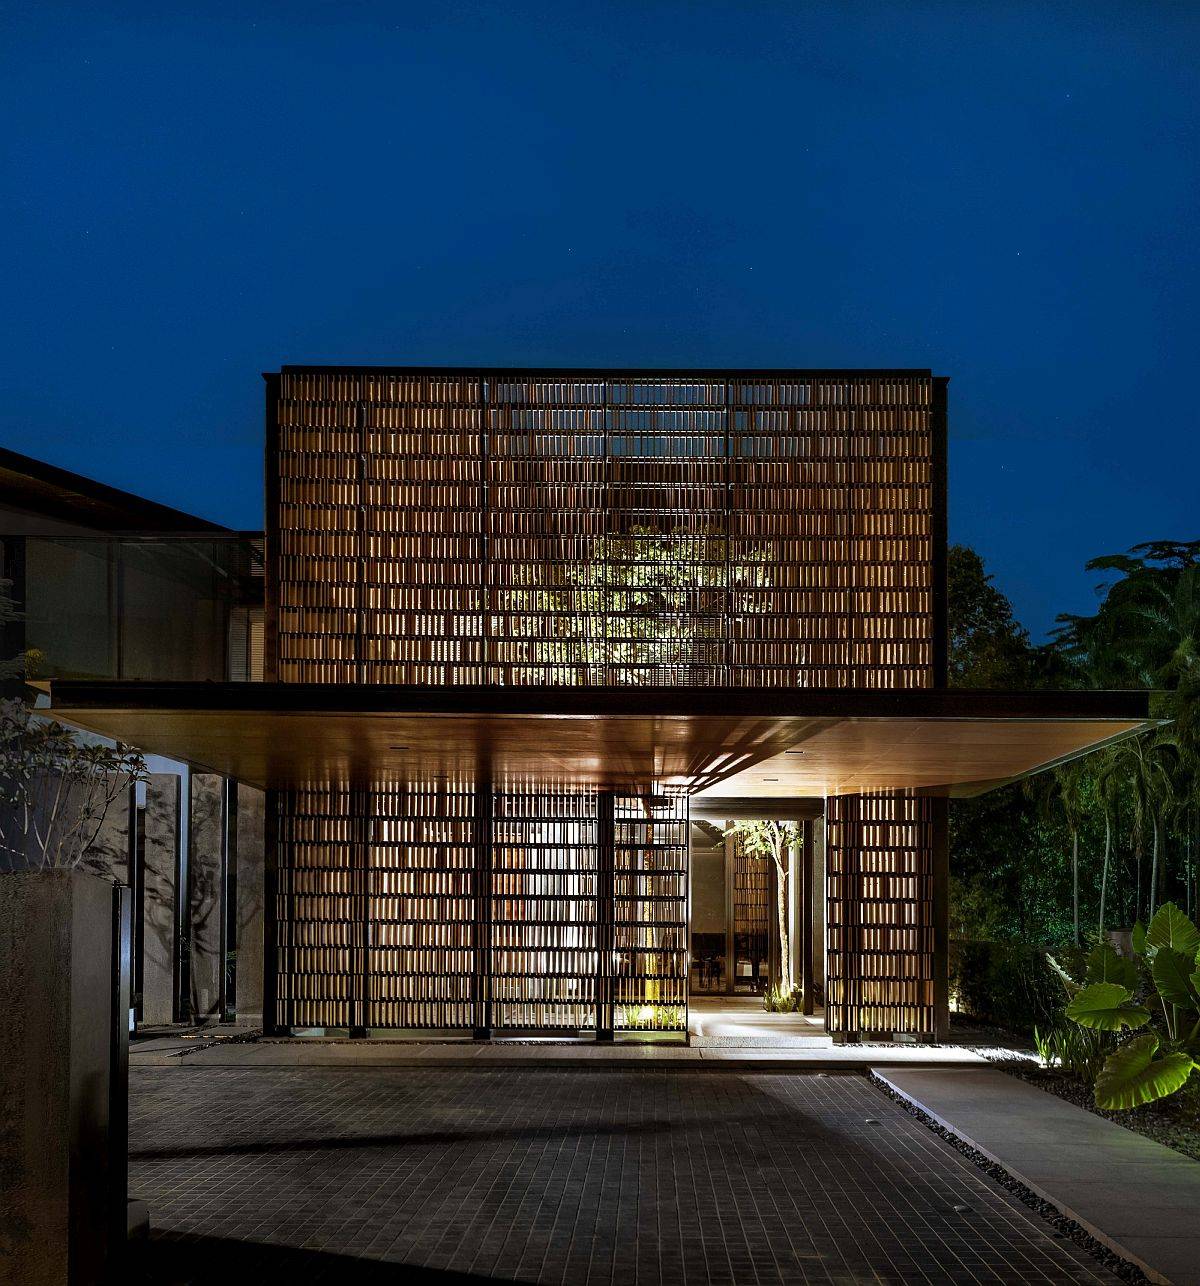 Mặt tiền lam gỗ mang đến cho ngôi nhà cái nhìn trực quan hấp dẫn, độc đáo. Đây là giải pháp thiết kế lấy sáng tự nhiên, thông gió tối đa cho công trình.